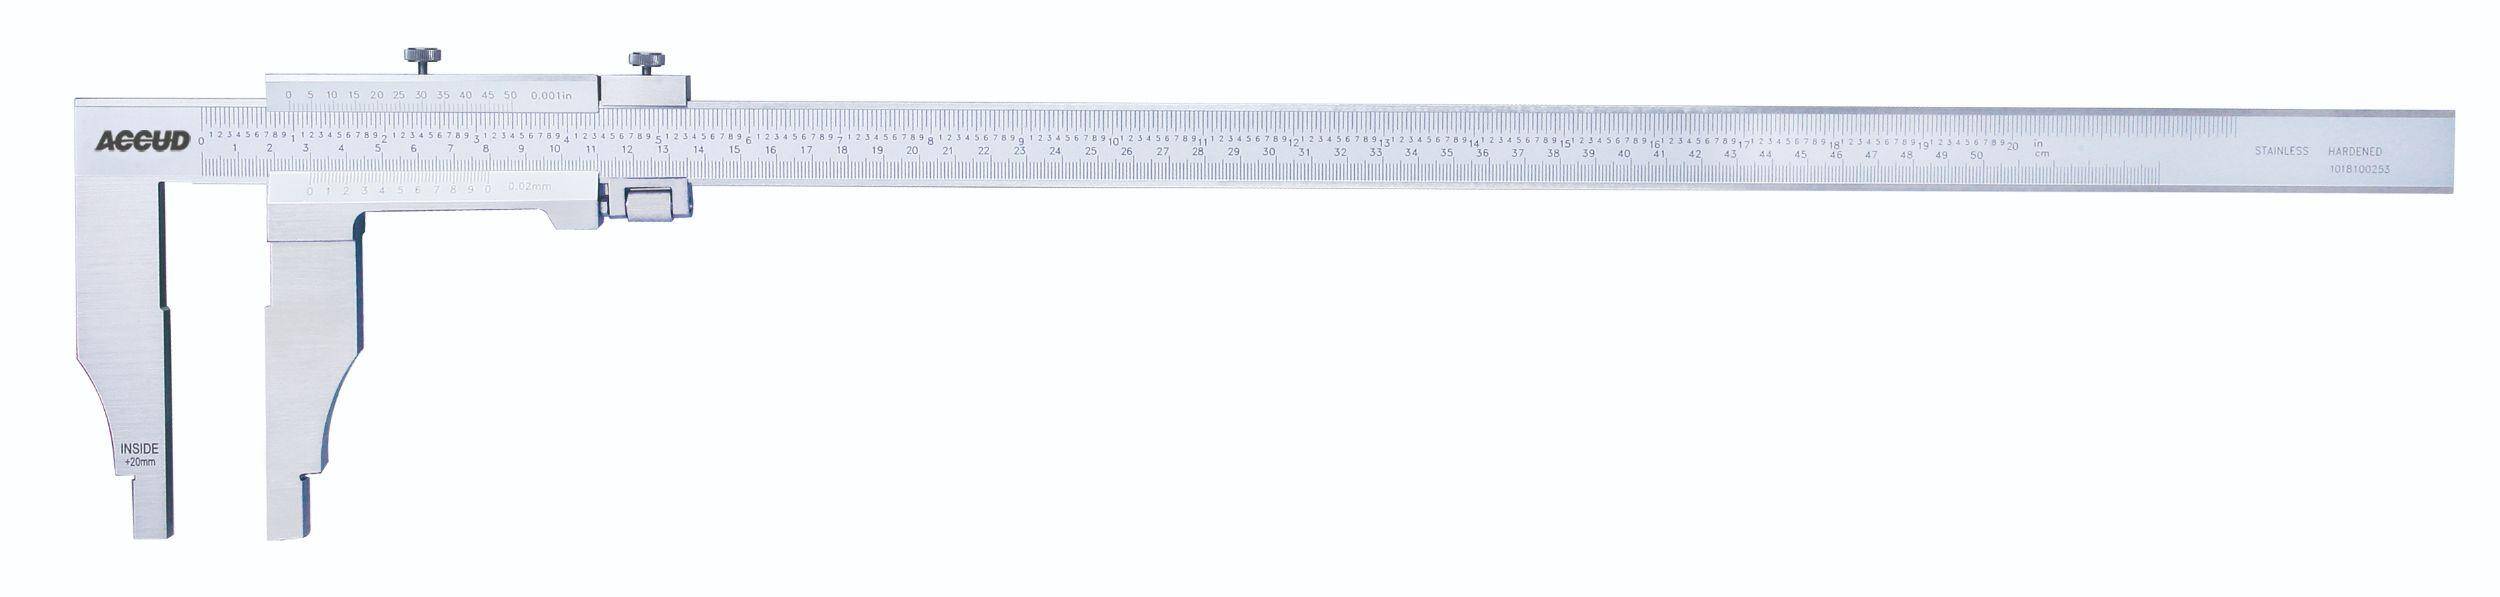 ACCUD suwmiarka analogowa 300/0.02 mm jednostronna długość szczęk 90 mm 128-012-21